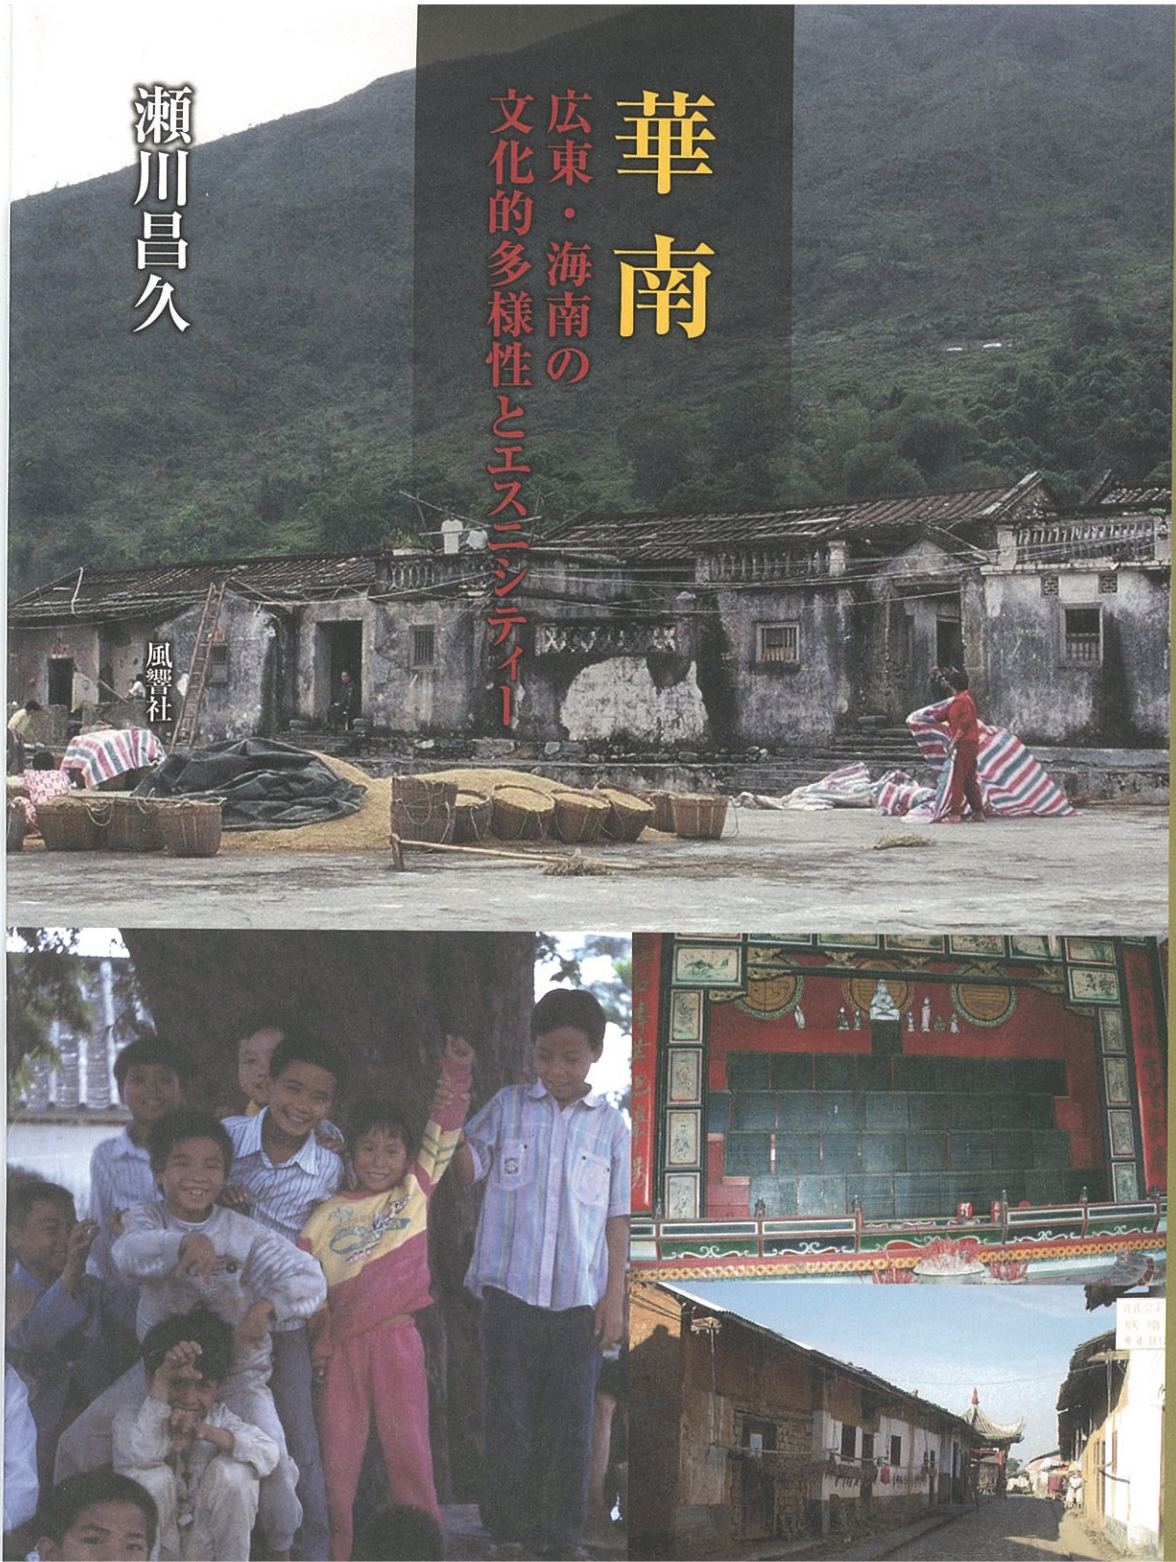 Hua Nan: The Cultural Diversity and Ethnicity of Guangdong and Hainan, South China